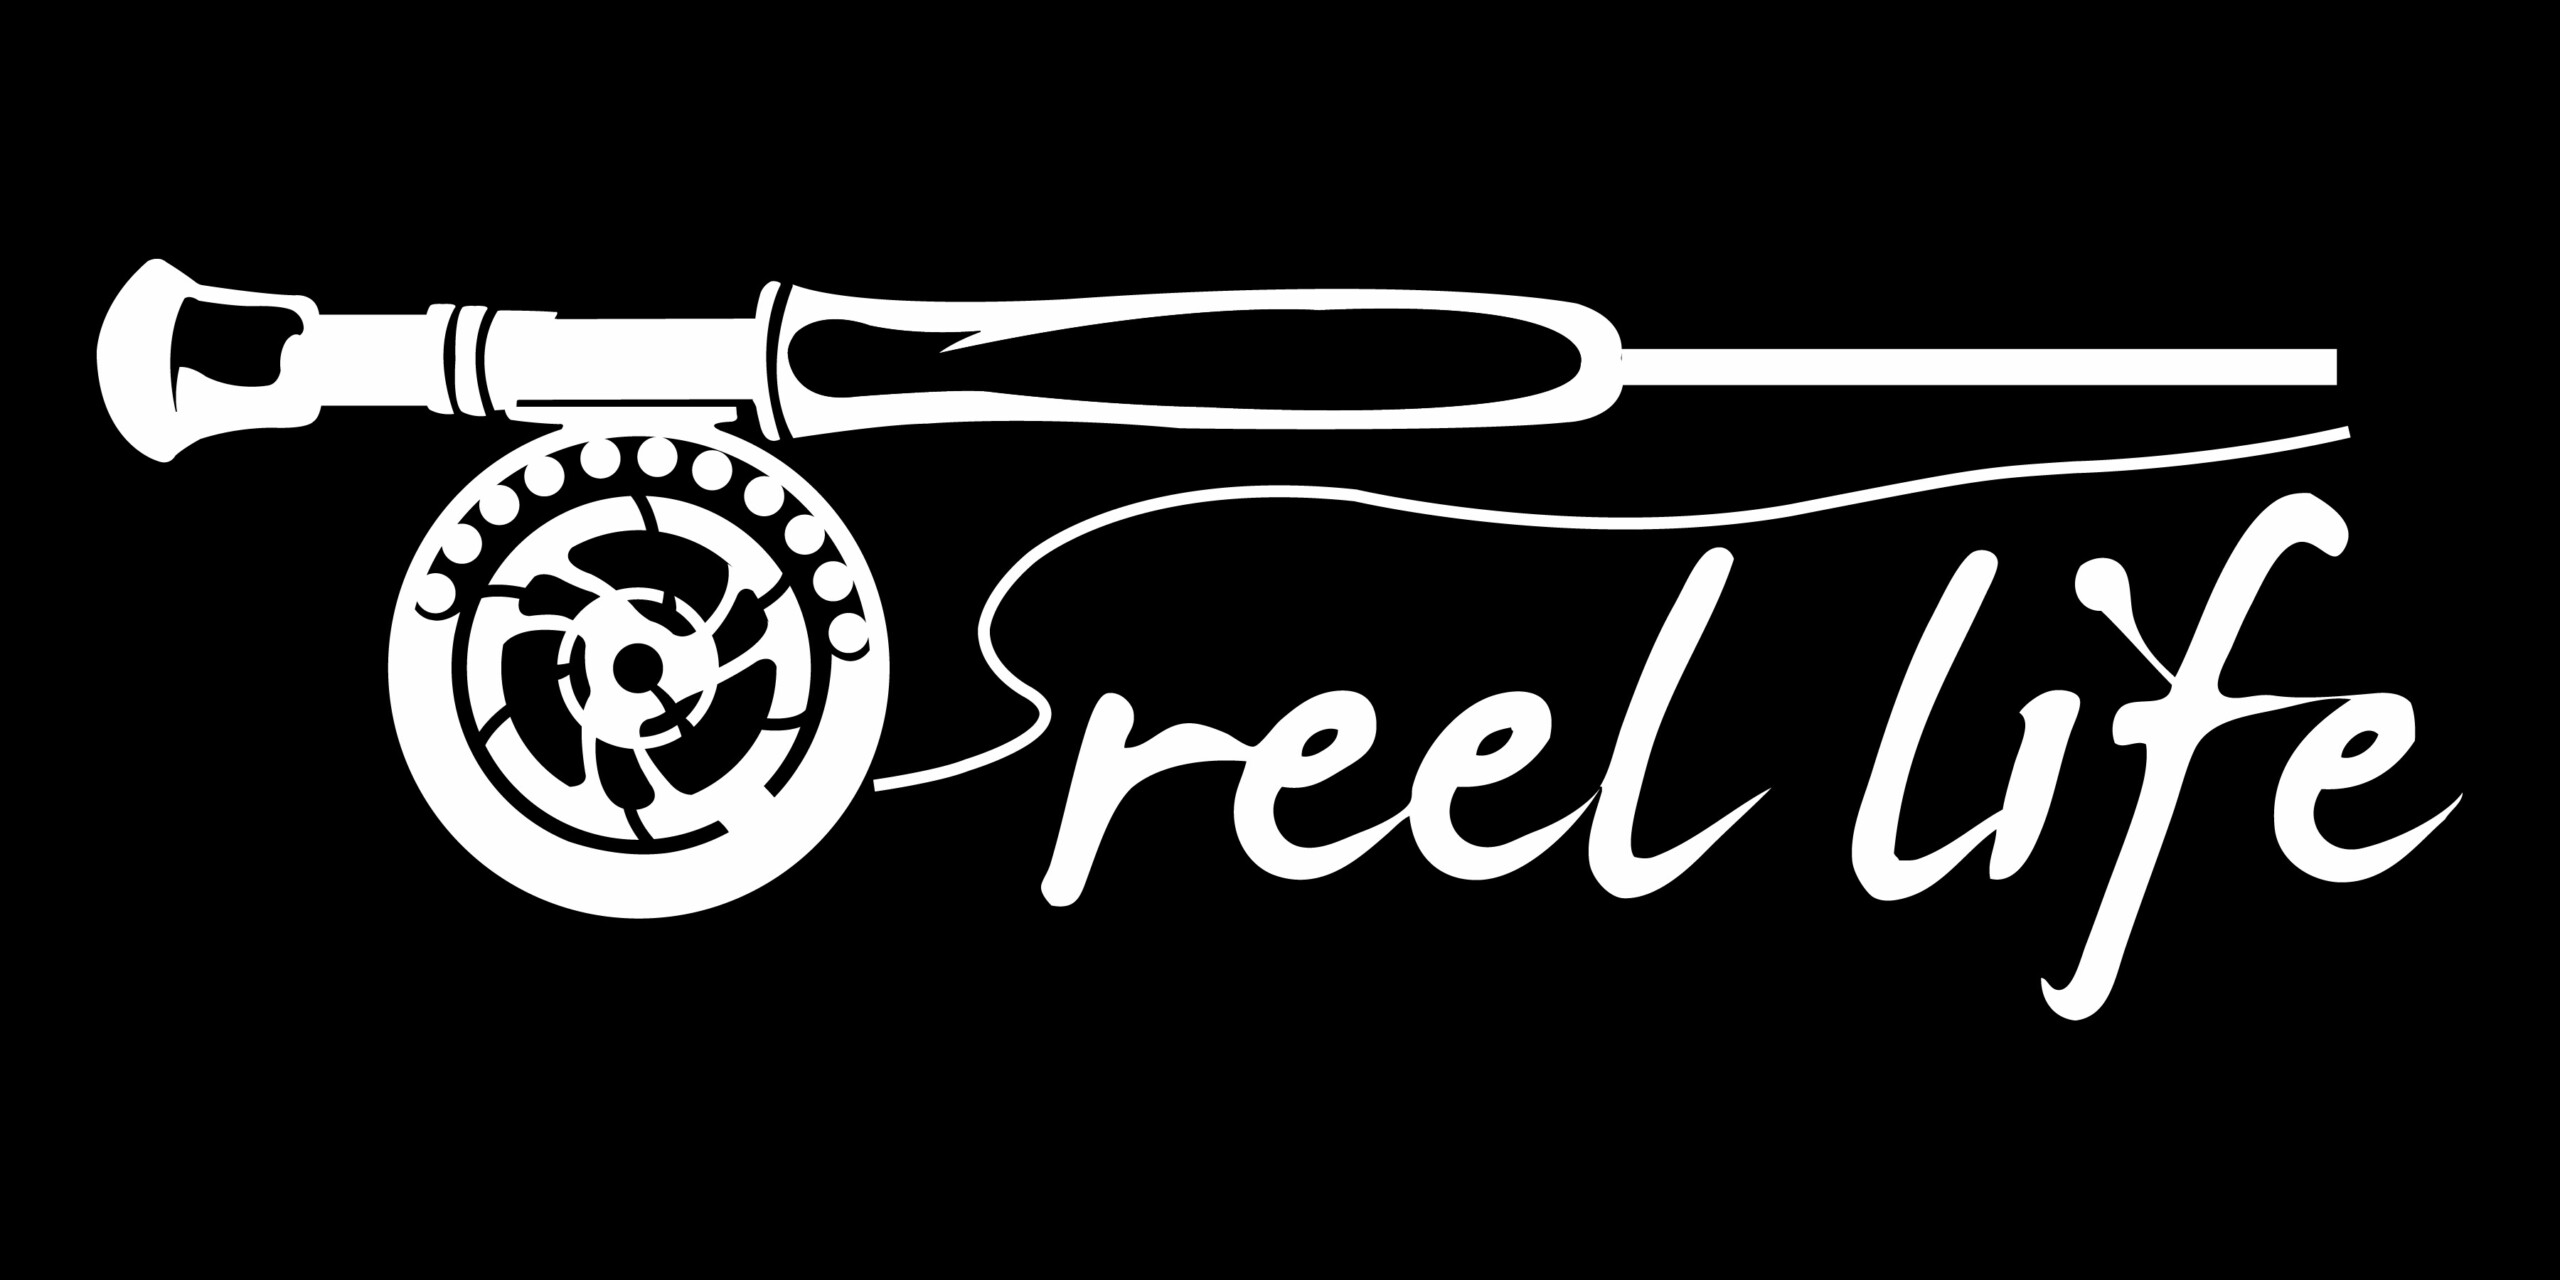 reel life die cut finshing vinyl decal 2 - Pro Sport Stickers